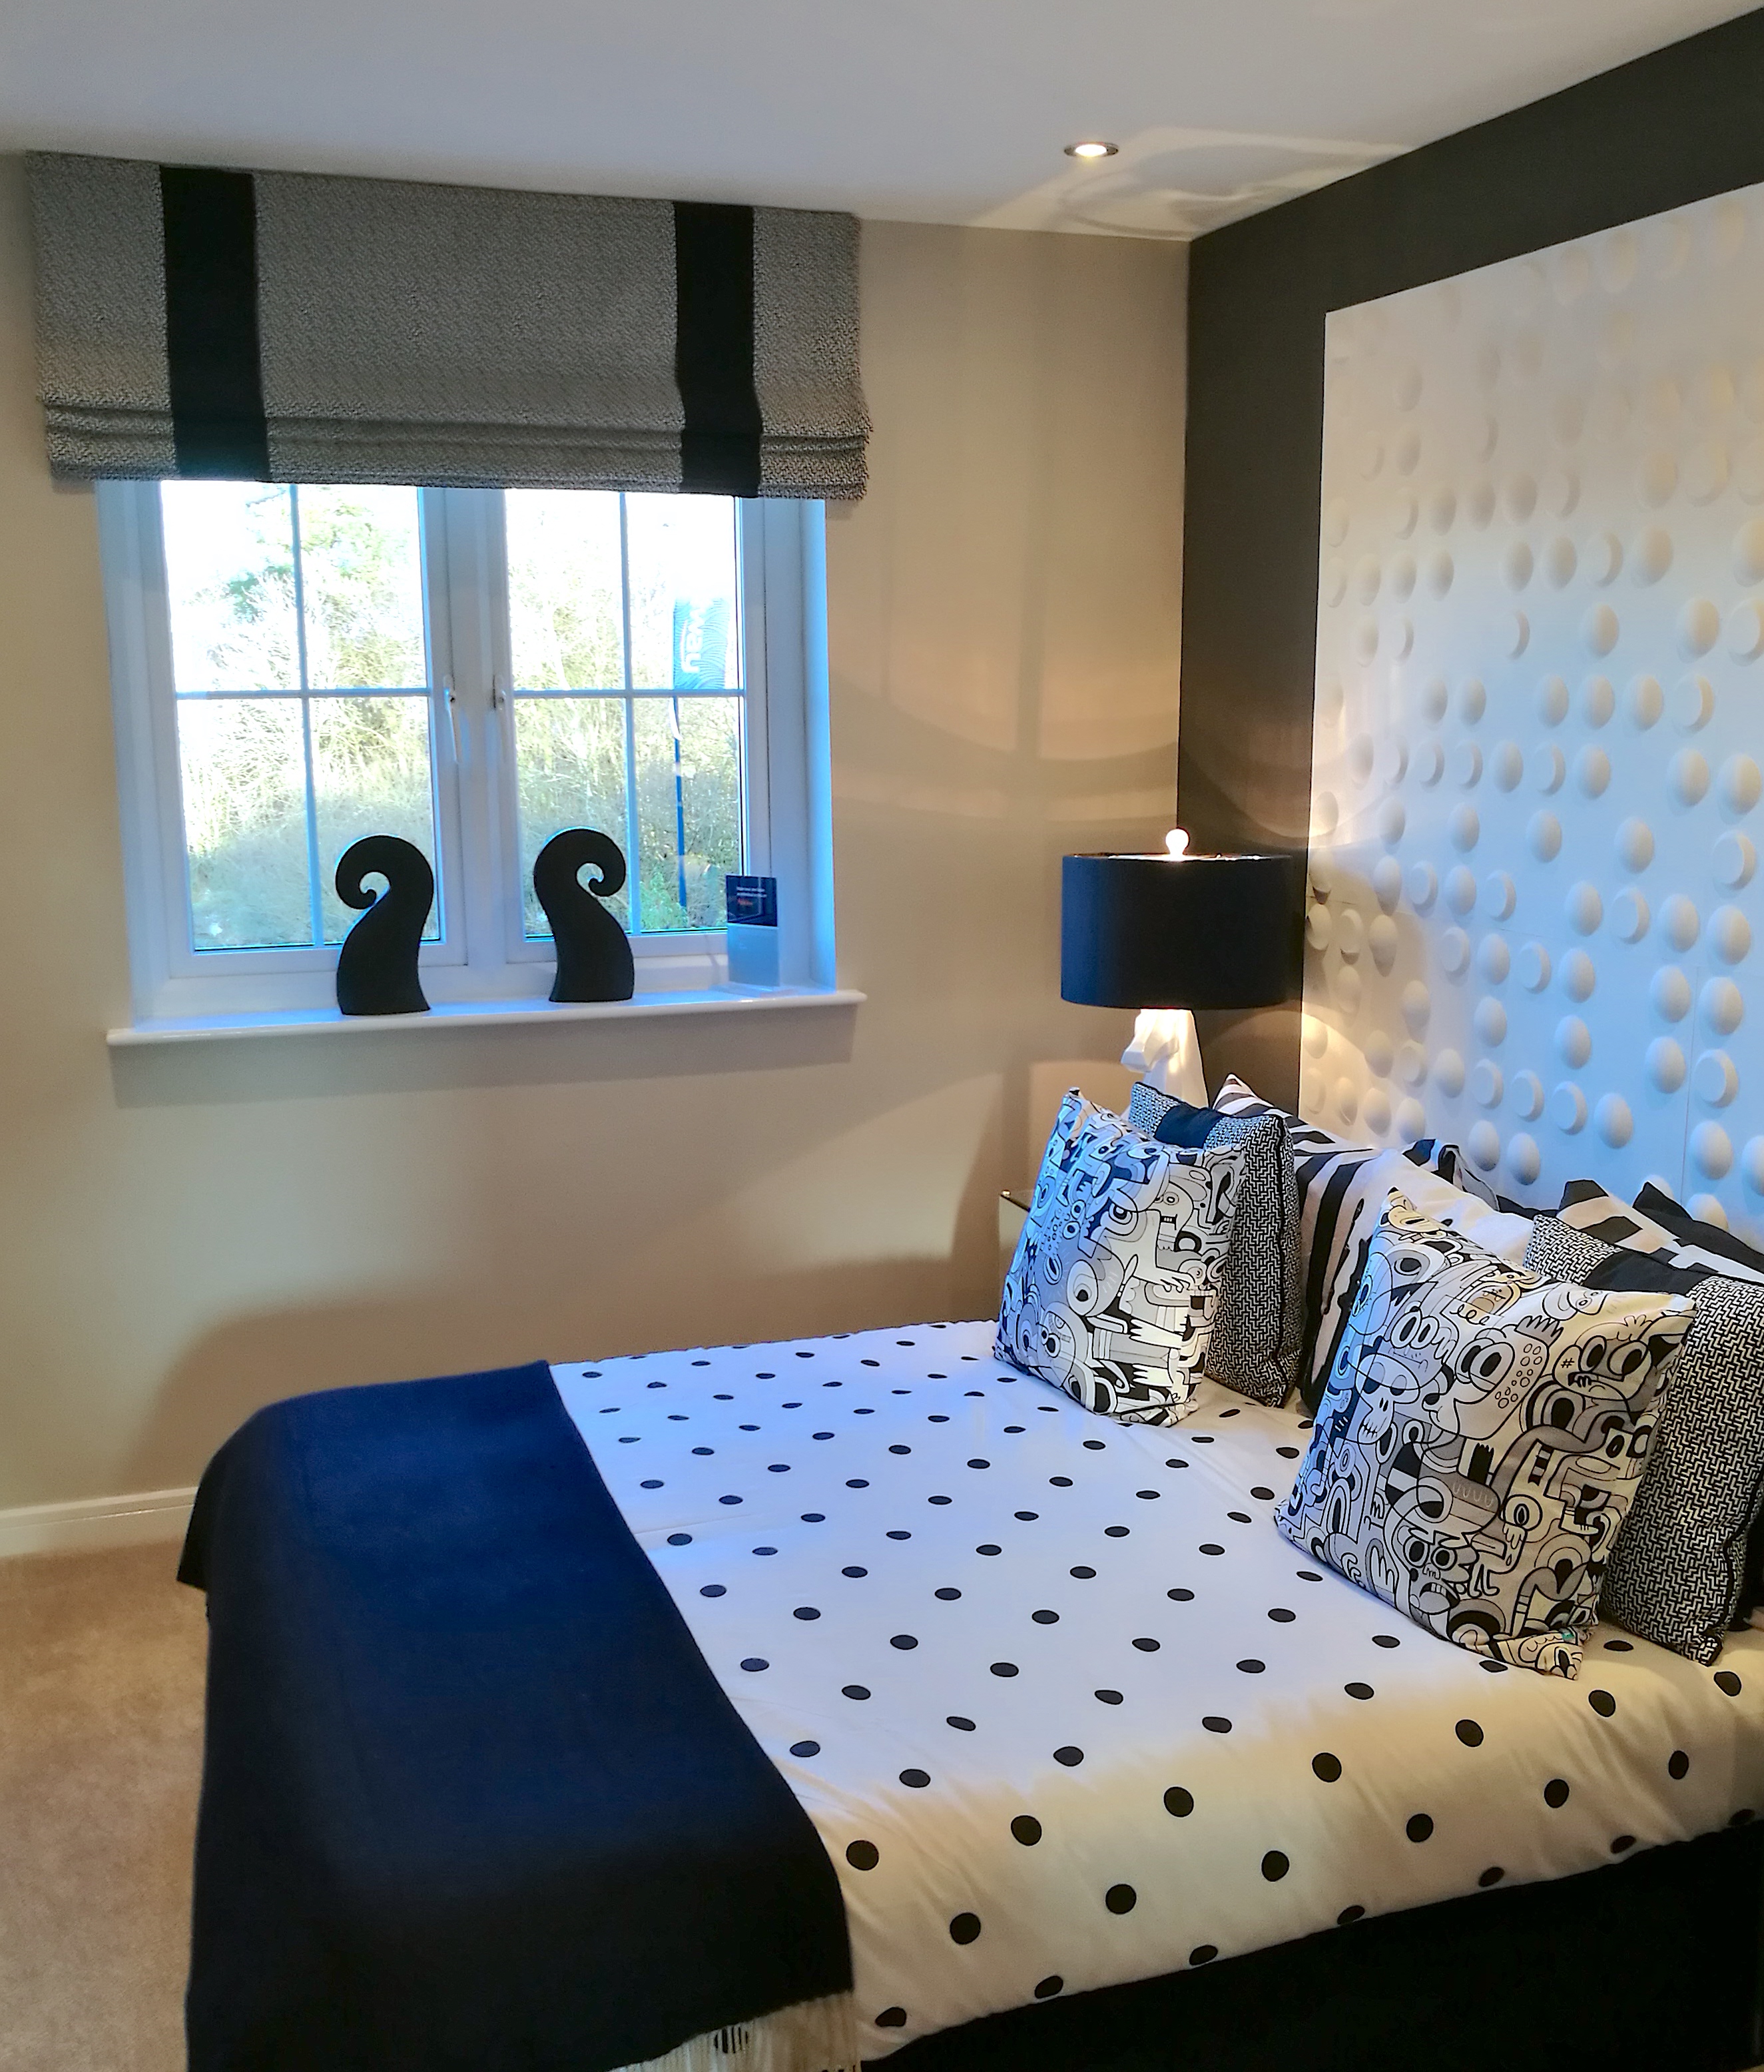 Show Home Bedroom Decor Interior Inspiration